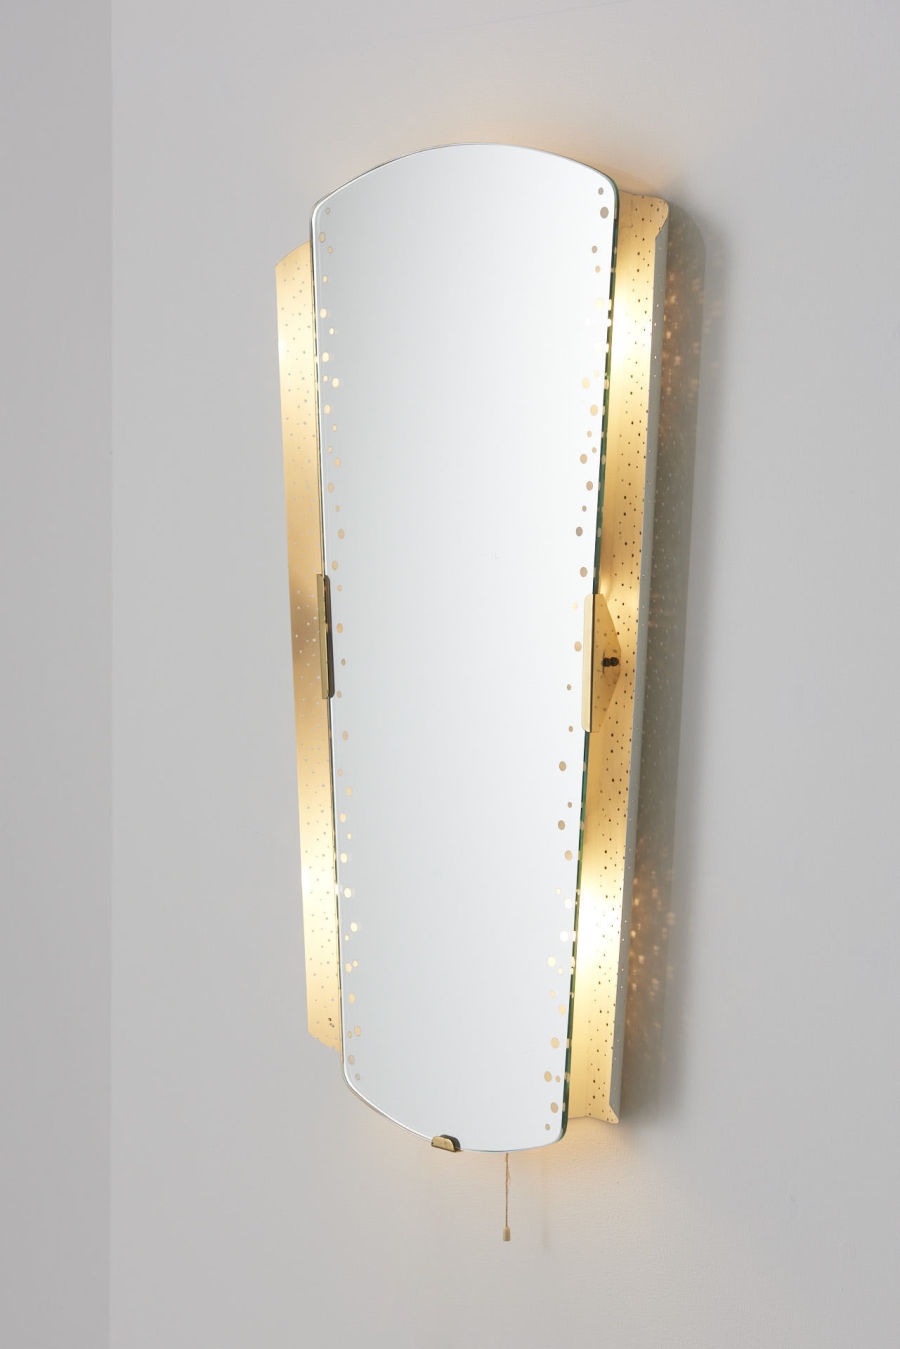 modestfurniture-vintage-2008-illuminated-mirror-ernest-igl-hillebrand-leuchten01